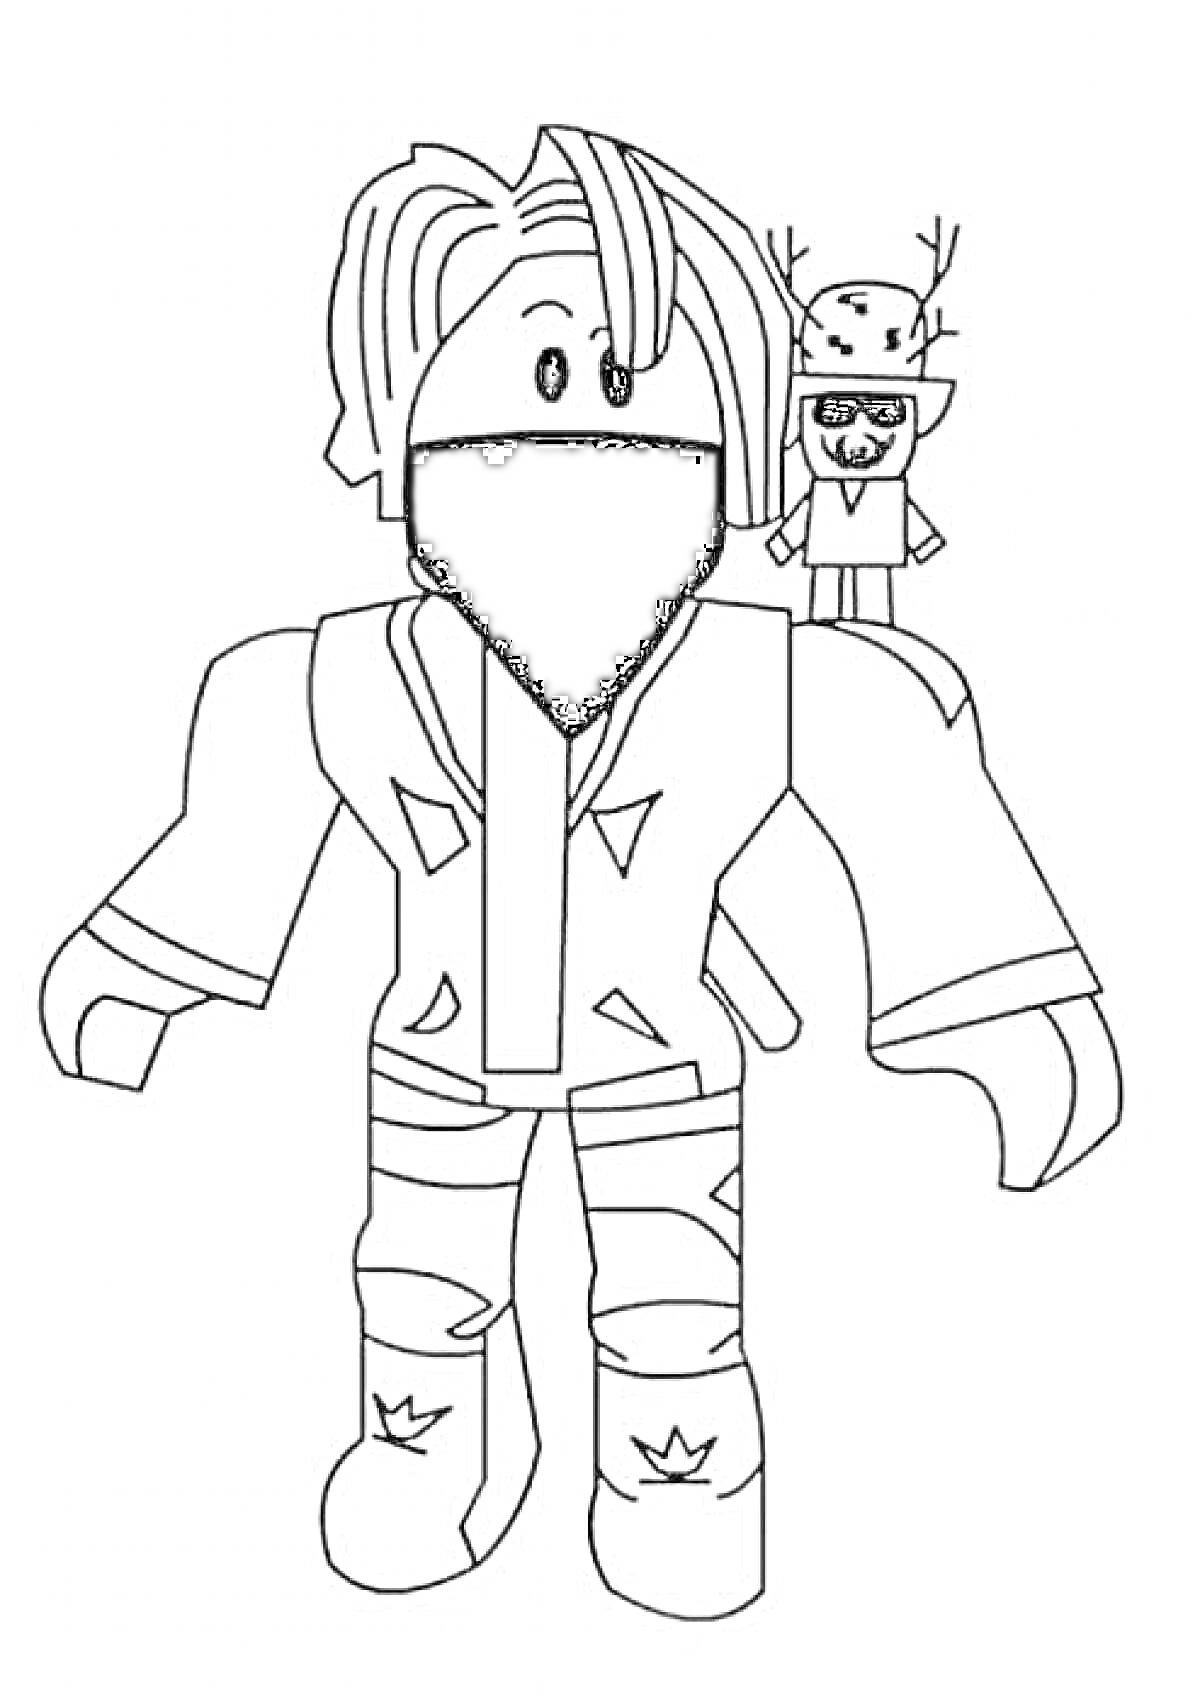 Раскраска Персонаж Roblox с маской на лице и маленькой игрушкой на плече